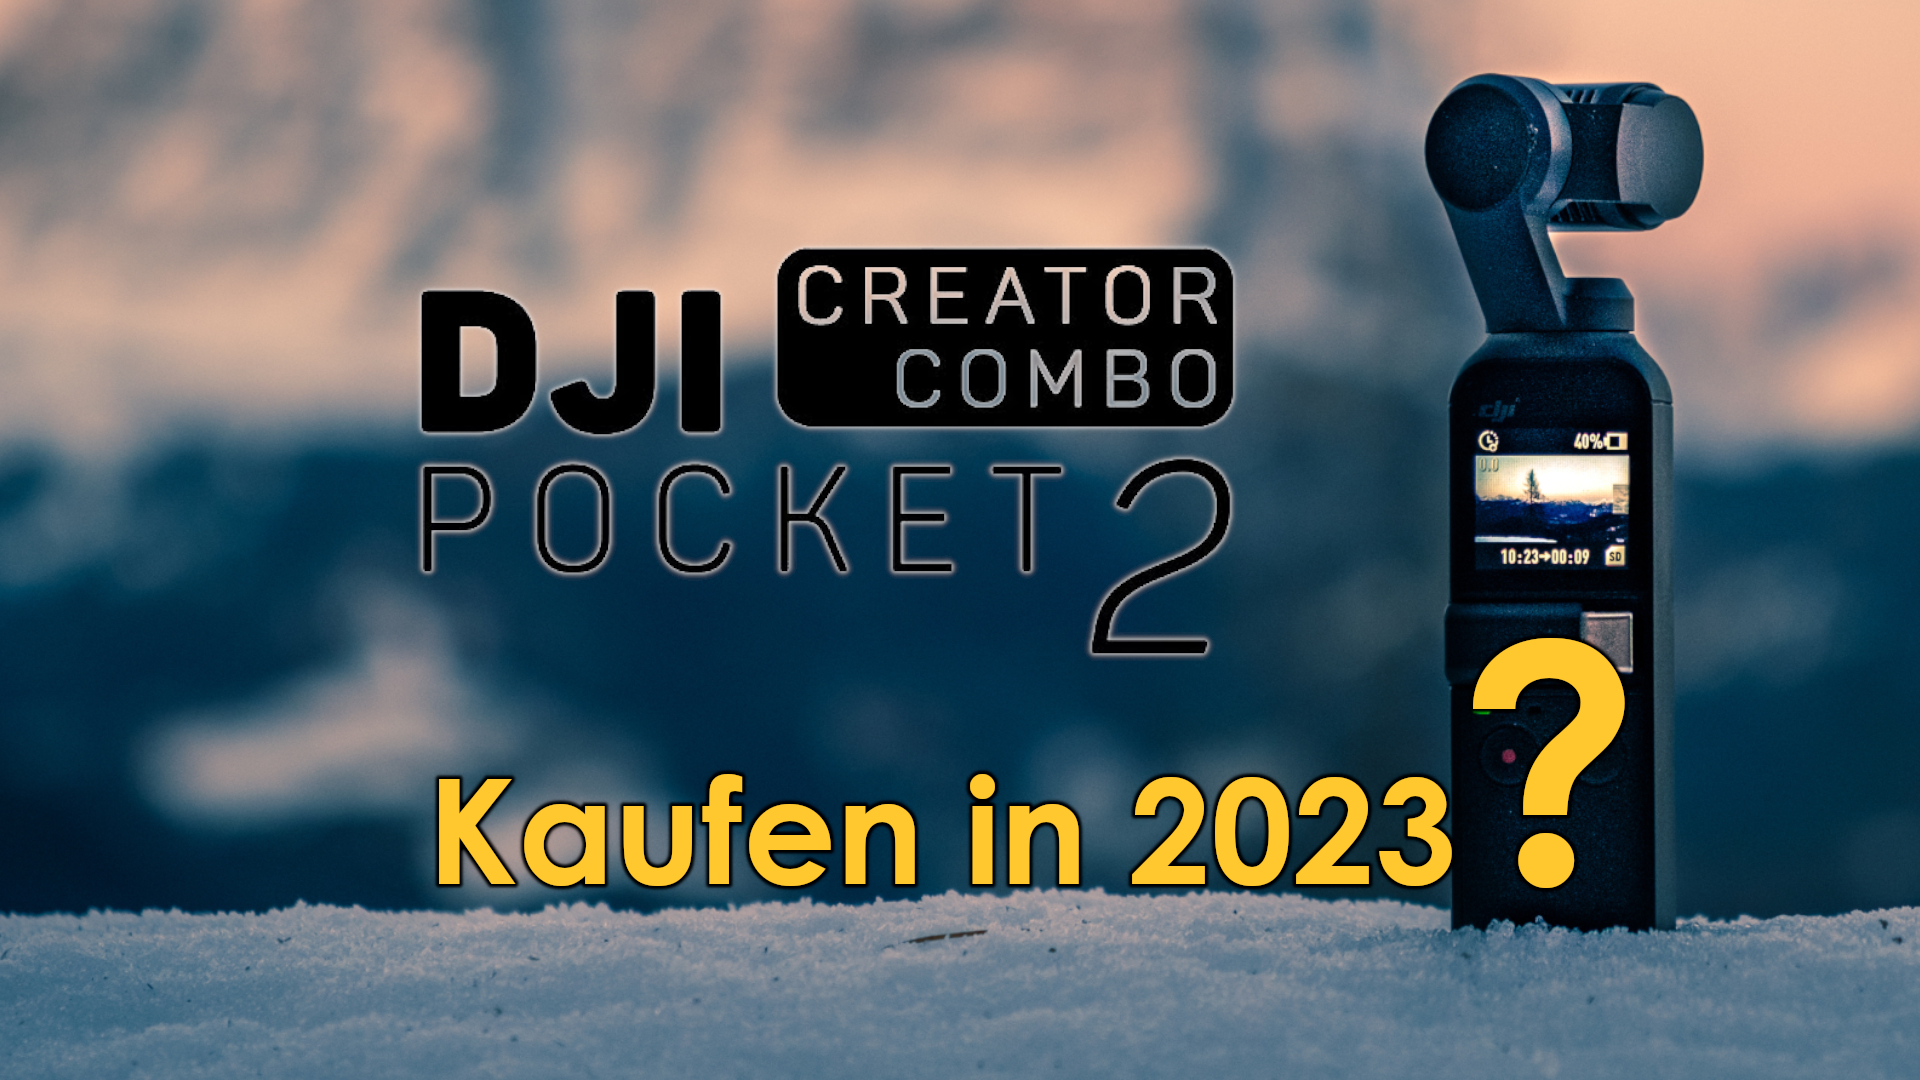 Hier findest du alle Informationen zur DJI Pocket 2 Creator Combo, die ich auch in meinem YouTube-Video vorgestellt habe. Ich habe mir die Frage gestellt: Ist diese Kamera es wert, dass man sie noch in 2023 kauft? Und ich kann dir sagen: Ja, definitiv! Im Video die Gründe dafür!